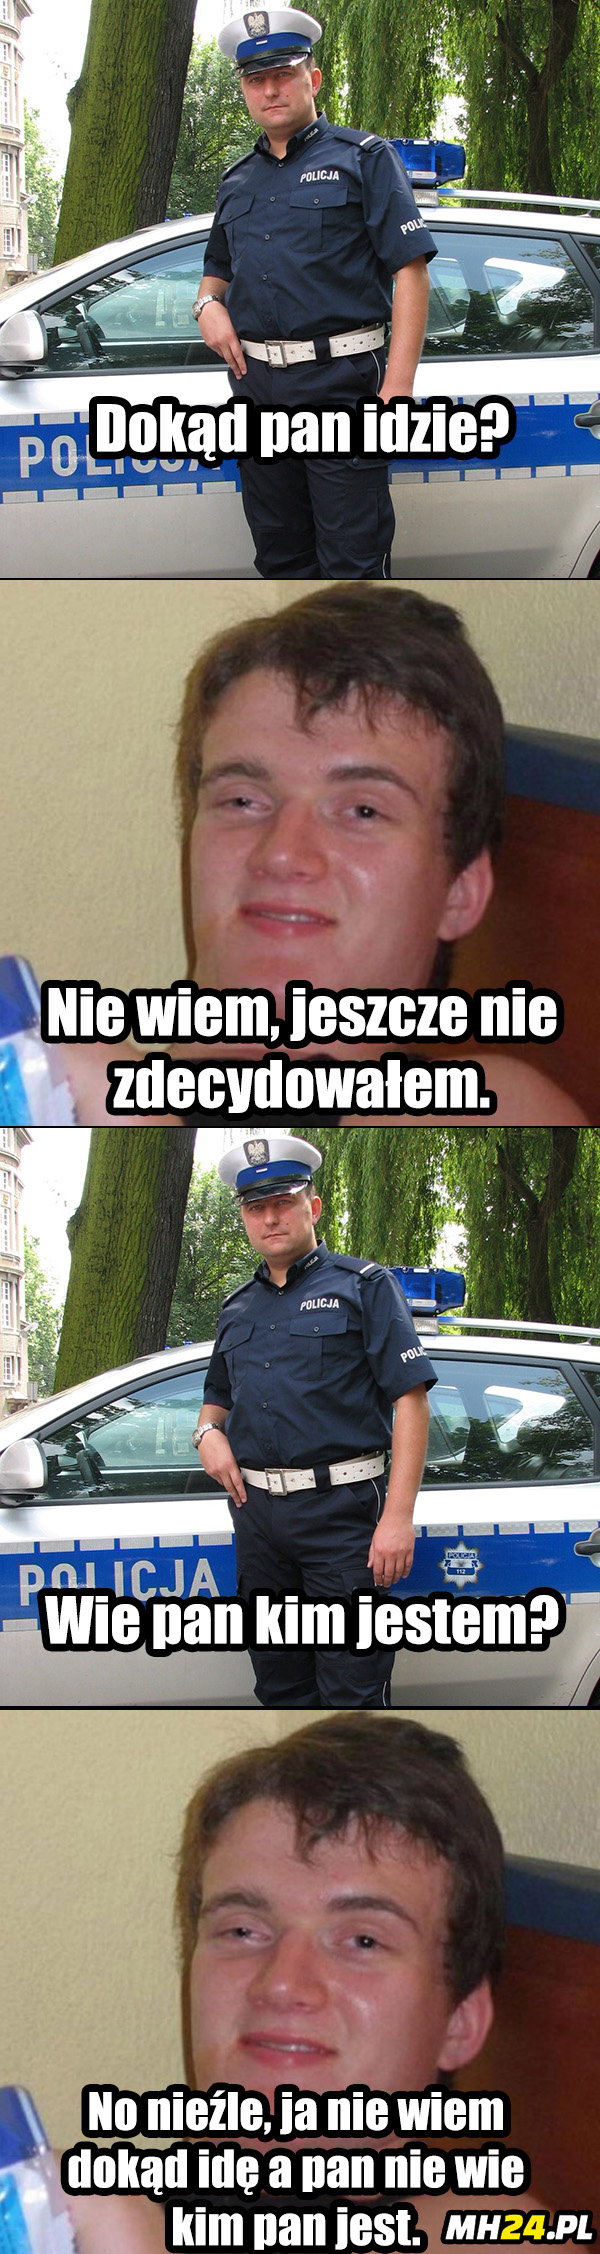 Zjarany Zbyszek stawia czoła policjantowi Obrazki   